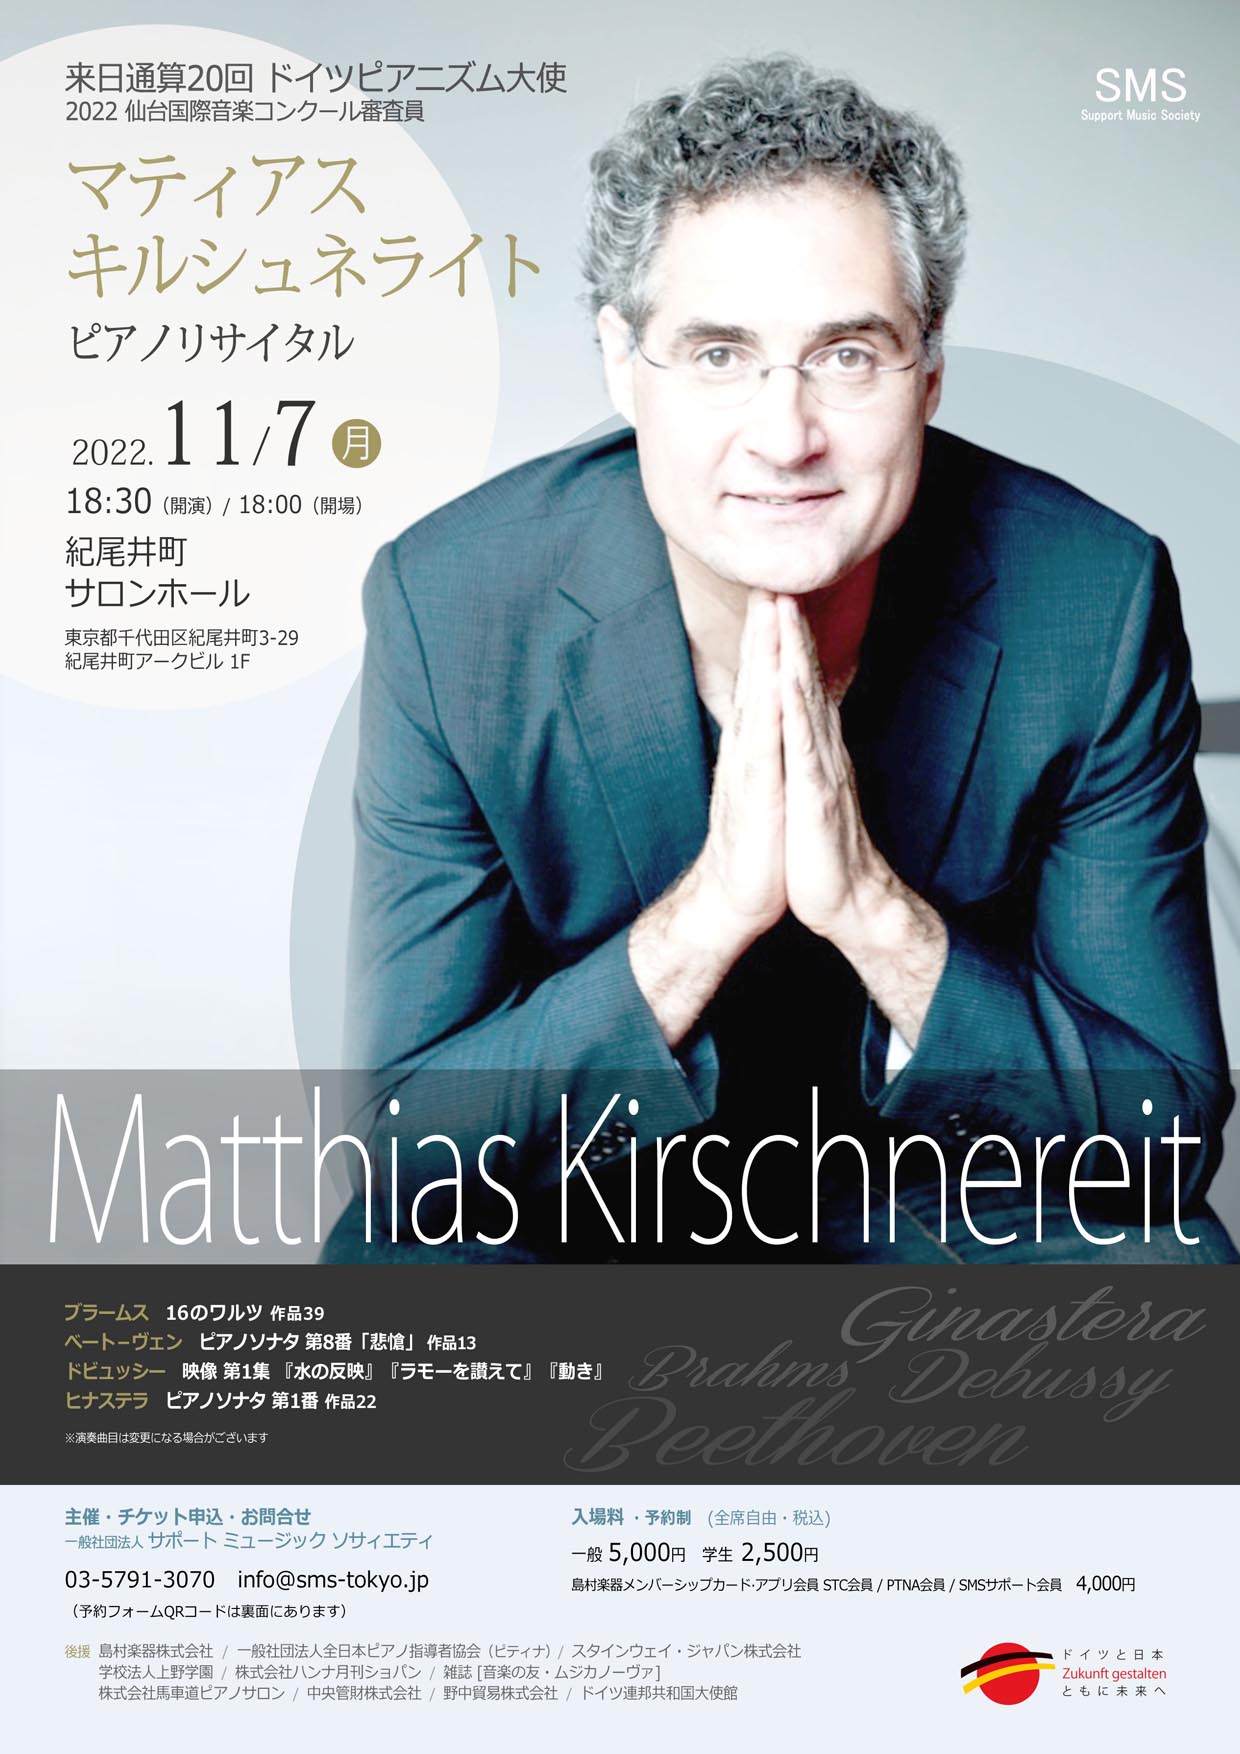 マティアス・キルシュネライト ピアノリサイタル Matthias Kirschnereit Piano Recital 来日通算18回 ドイツピアニズム大使